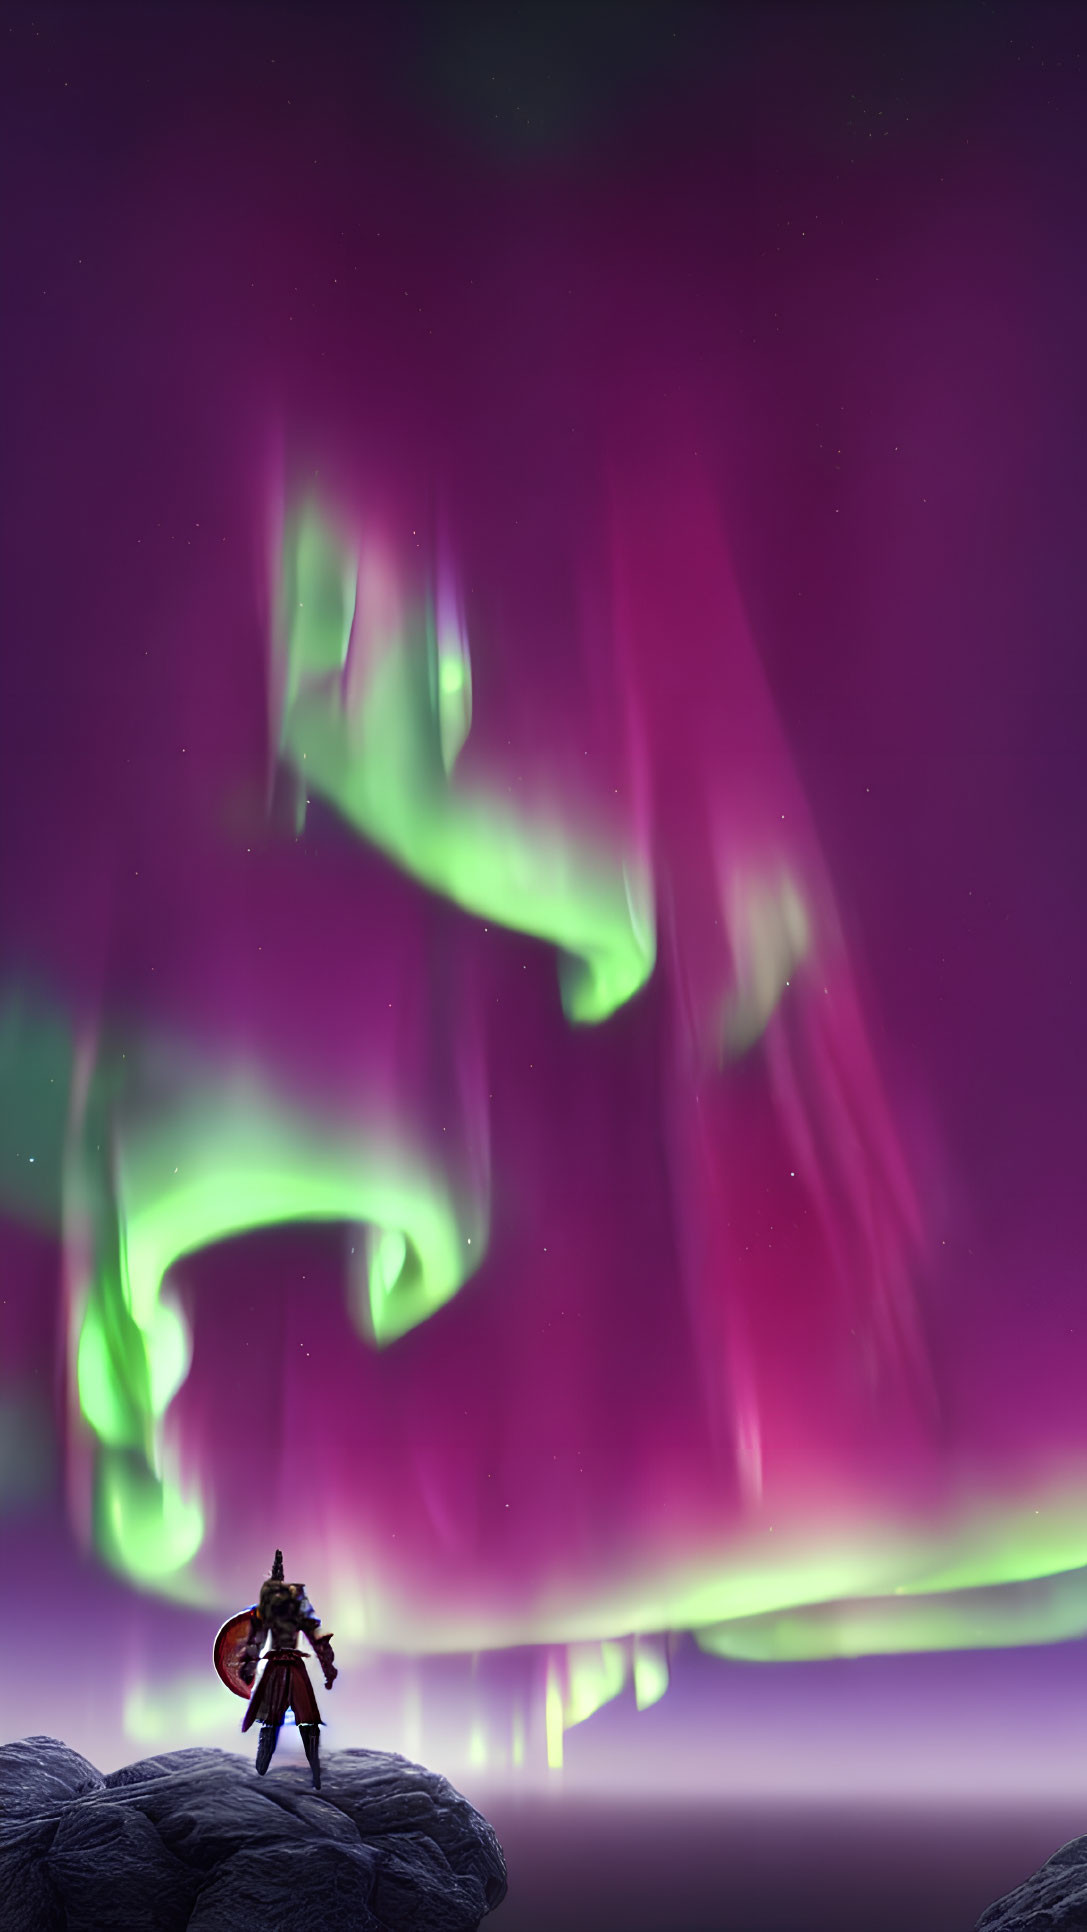 Solitary Figure on Rock Gazes at Aurora Borealis